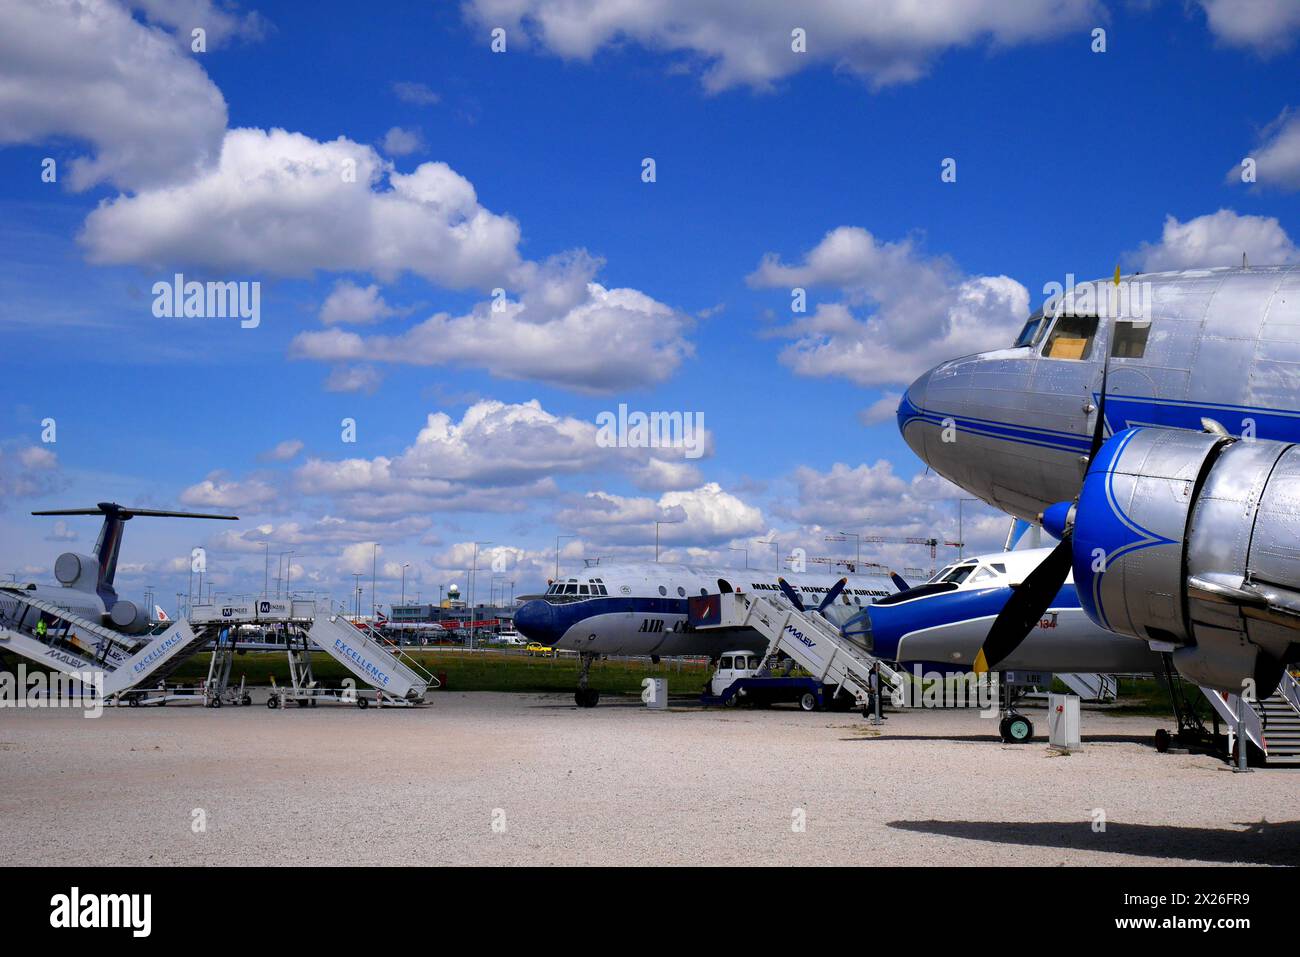 Une ère soviétique Lisunov Li 2 de MALEV compagnie aérienne hongroise exposée au Repülőmúzeum, aéroparc, aéroport international de Budapest, Hongrie Banque D'Images